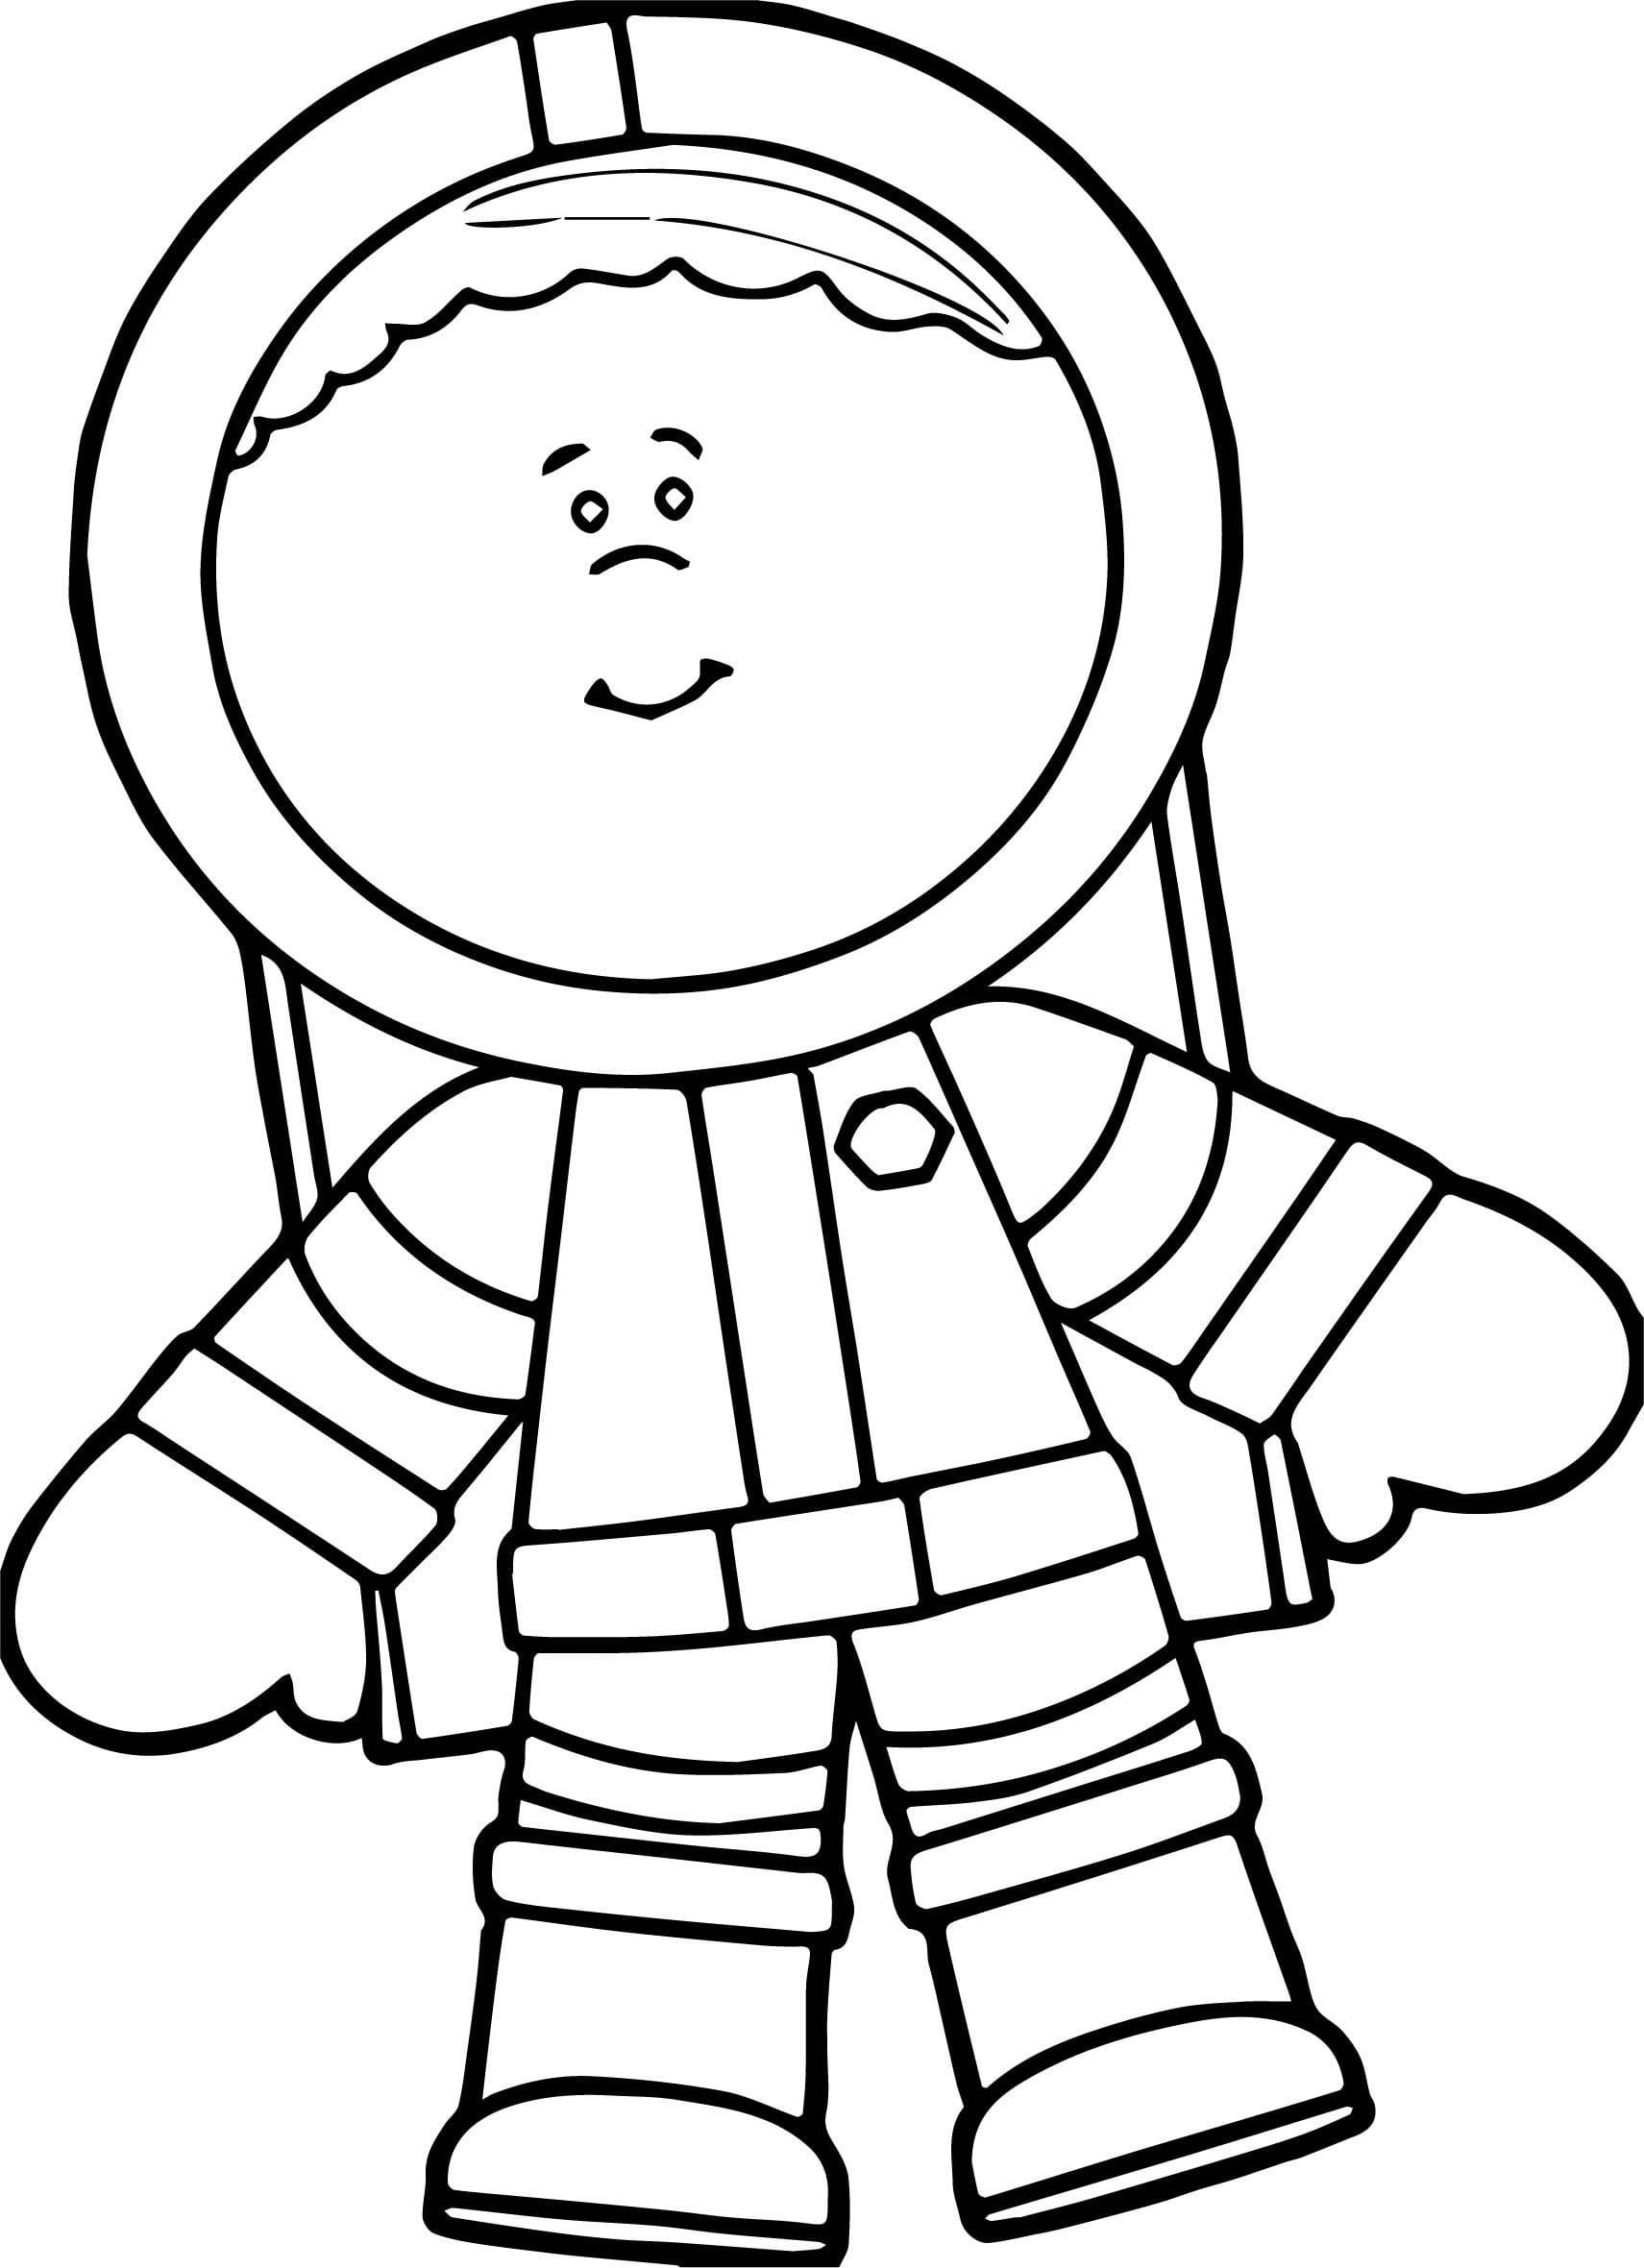 космонавт раскраска для малышей распечатать 9